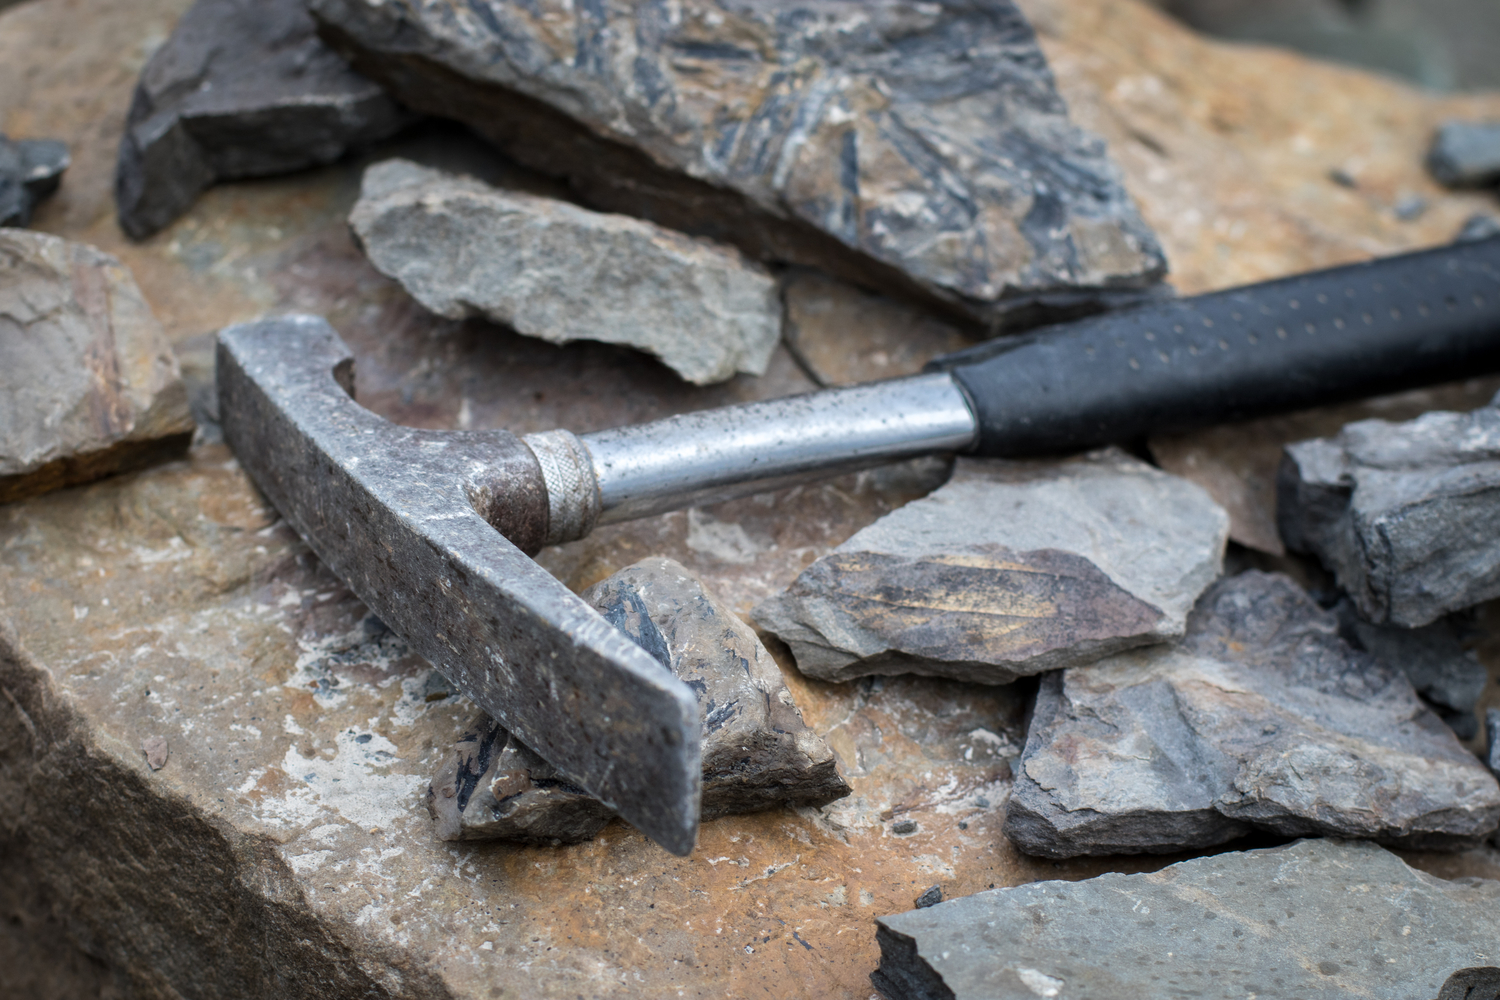 ASR Outdoor Beginner Fossils Geology Gem Mining Rockhounding Tools